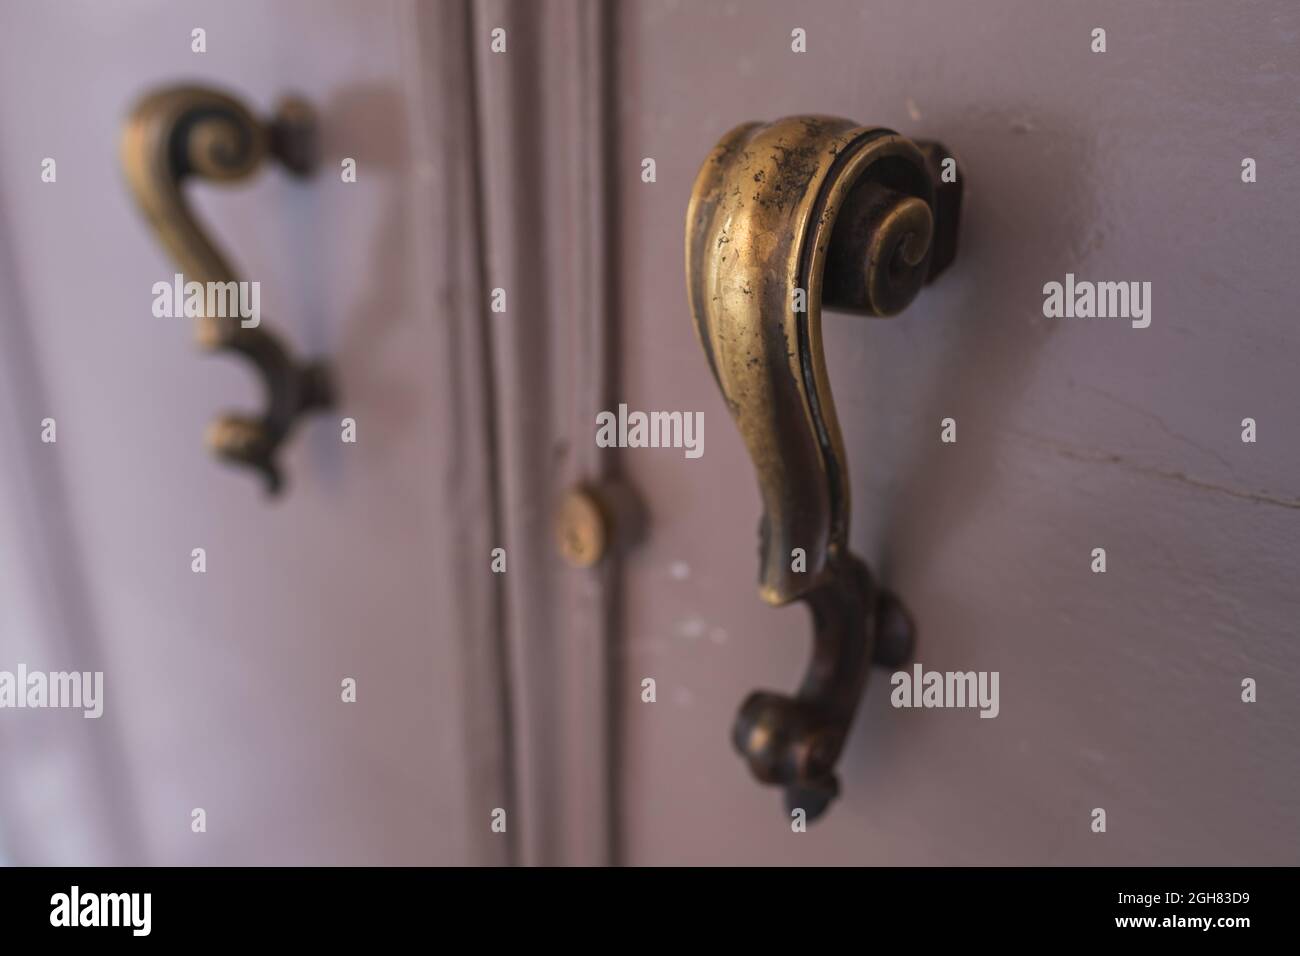 Ancient italian door handle close-up Stock Photo